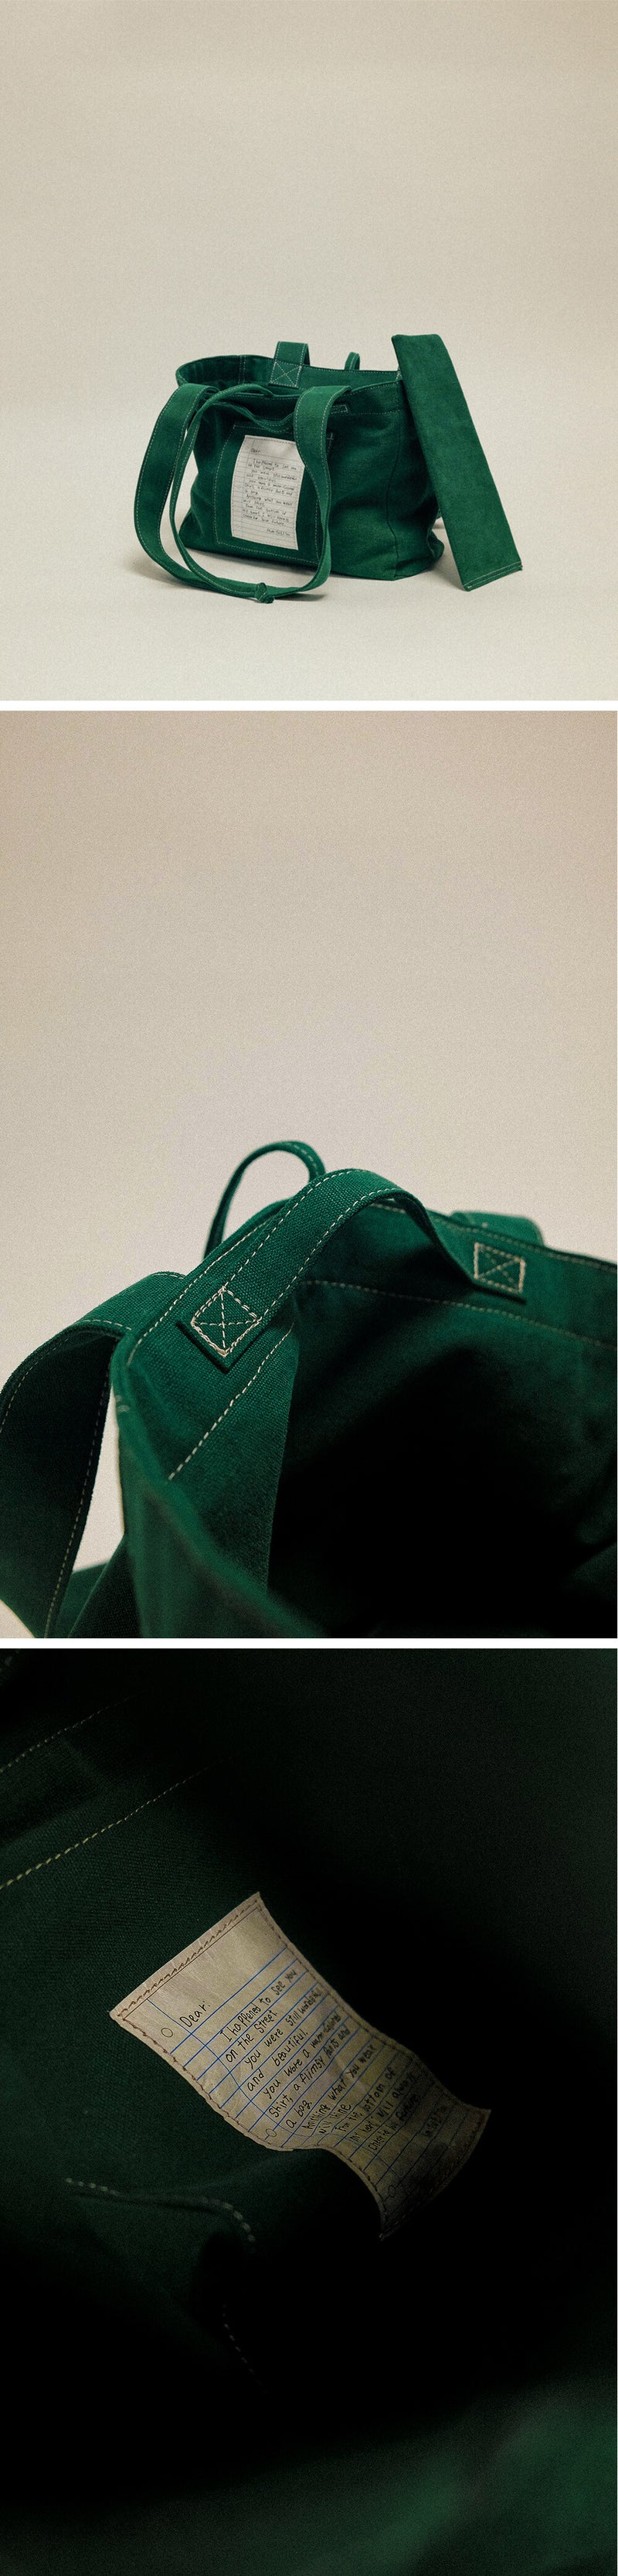 (スモール) ビンテージキャンバスバッグ / (Small) Vintage Canvas Bag - Green